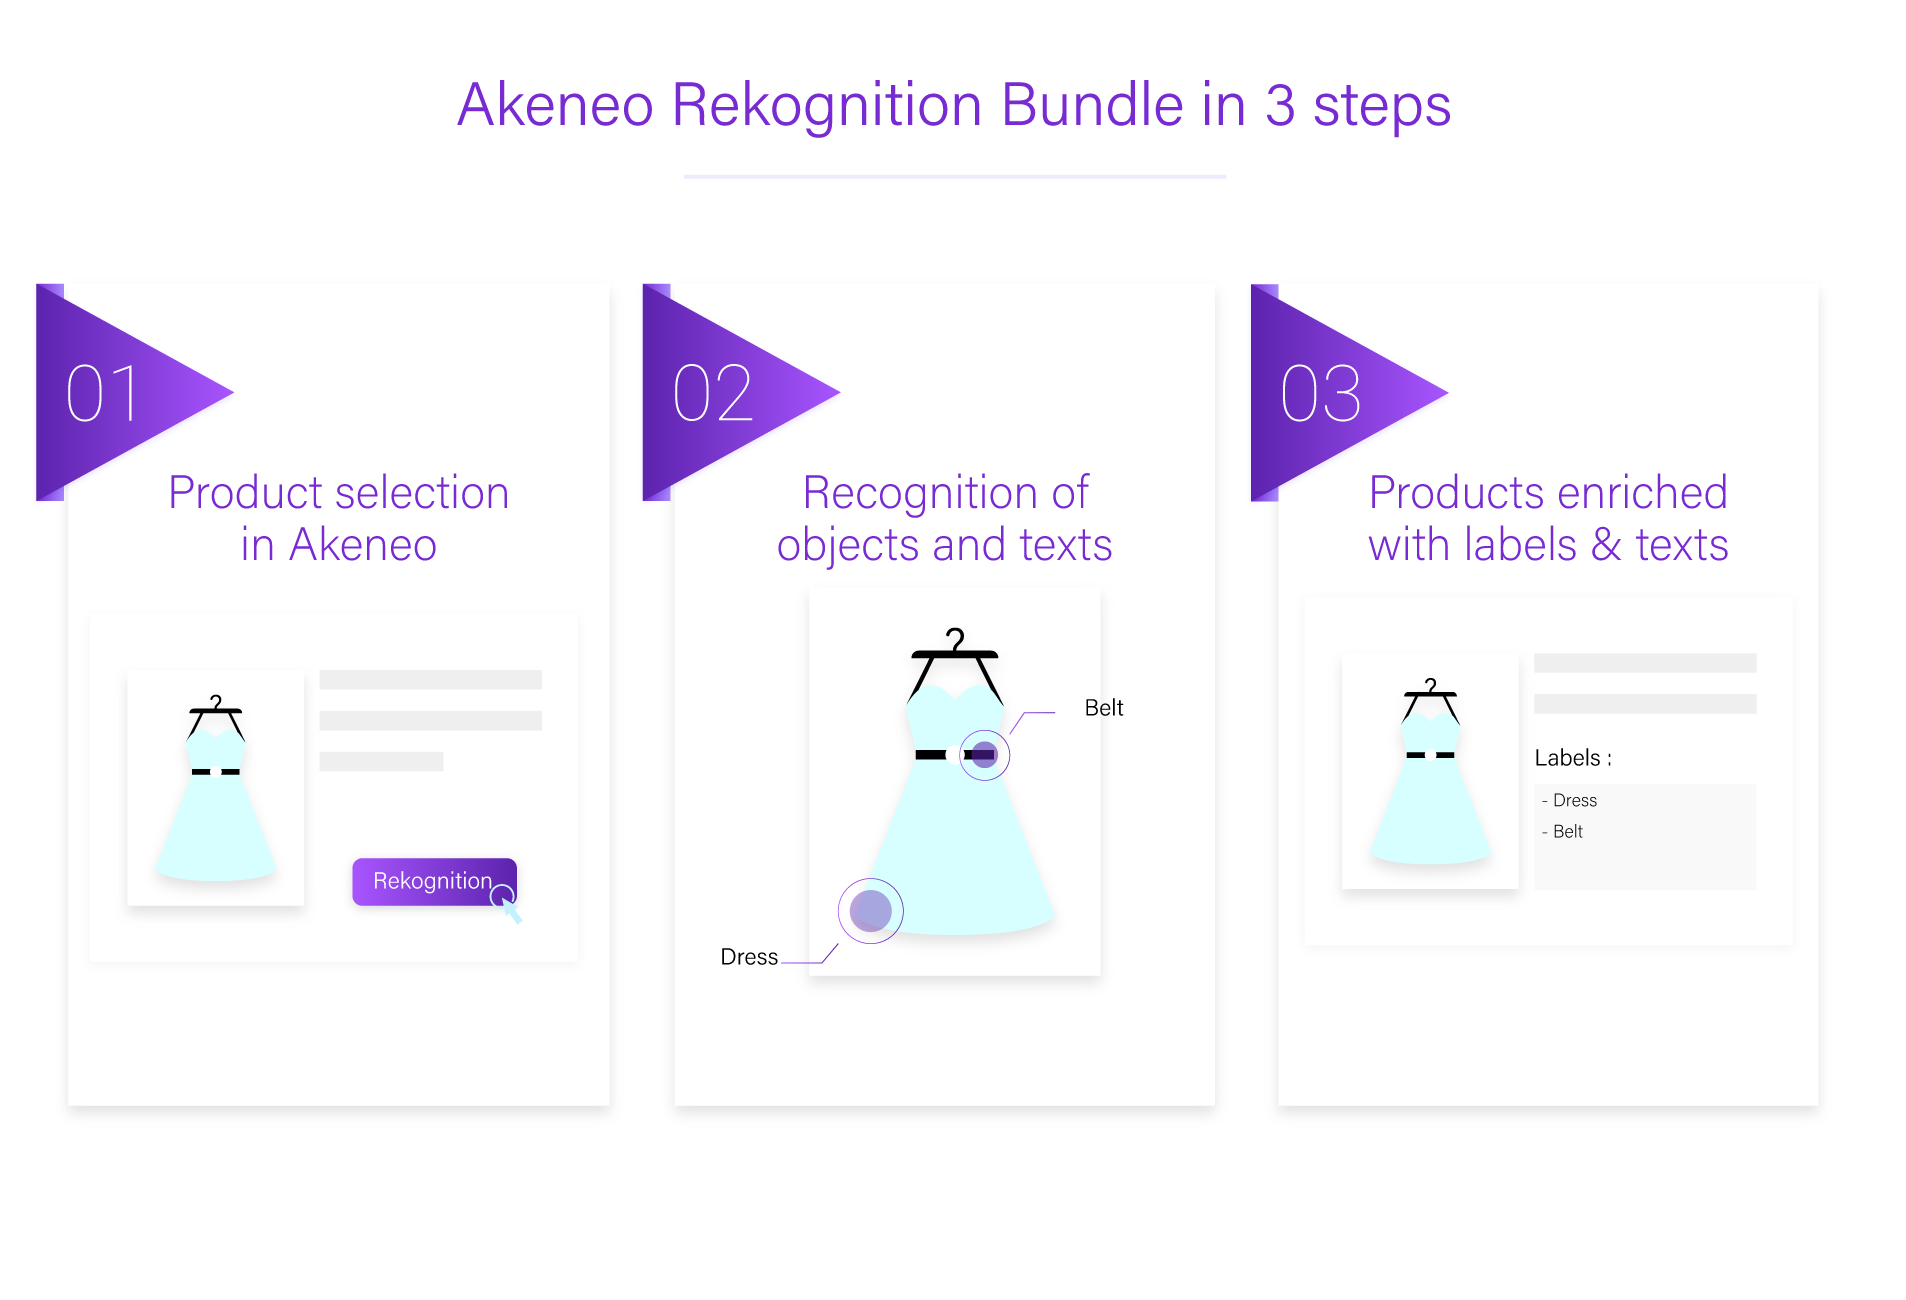 Akeneo Rekognition Bundle in 3 steps